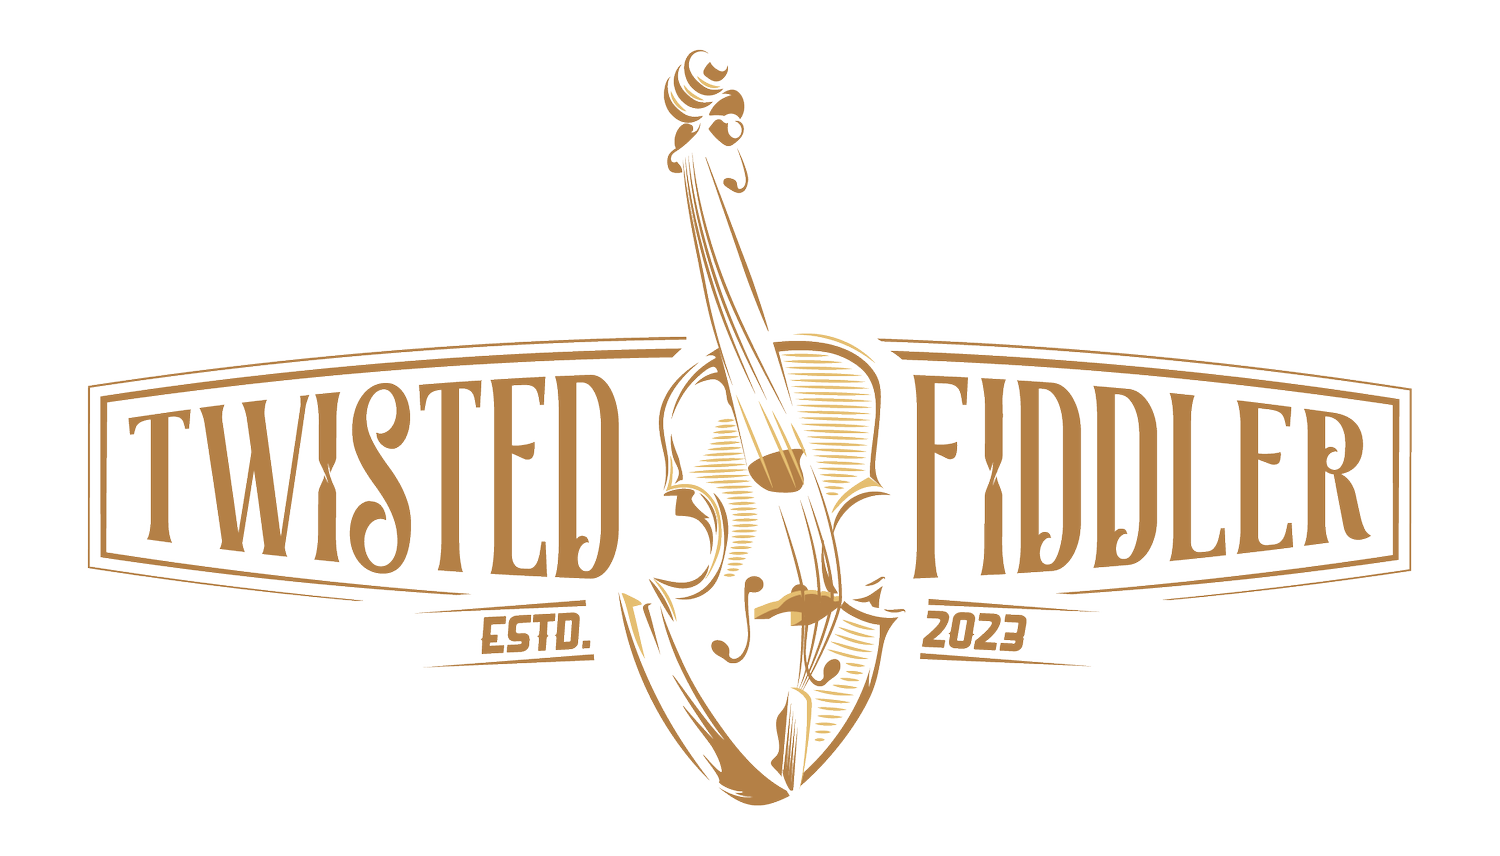 Twisted Fiddler